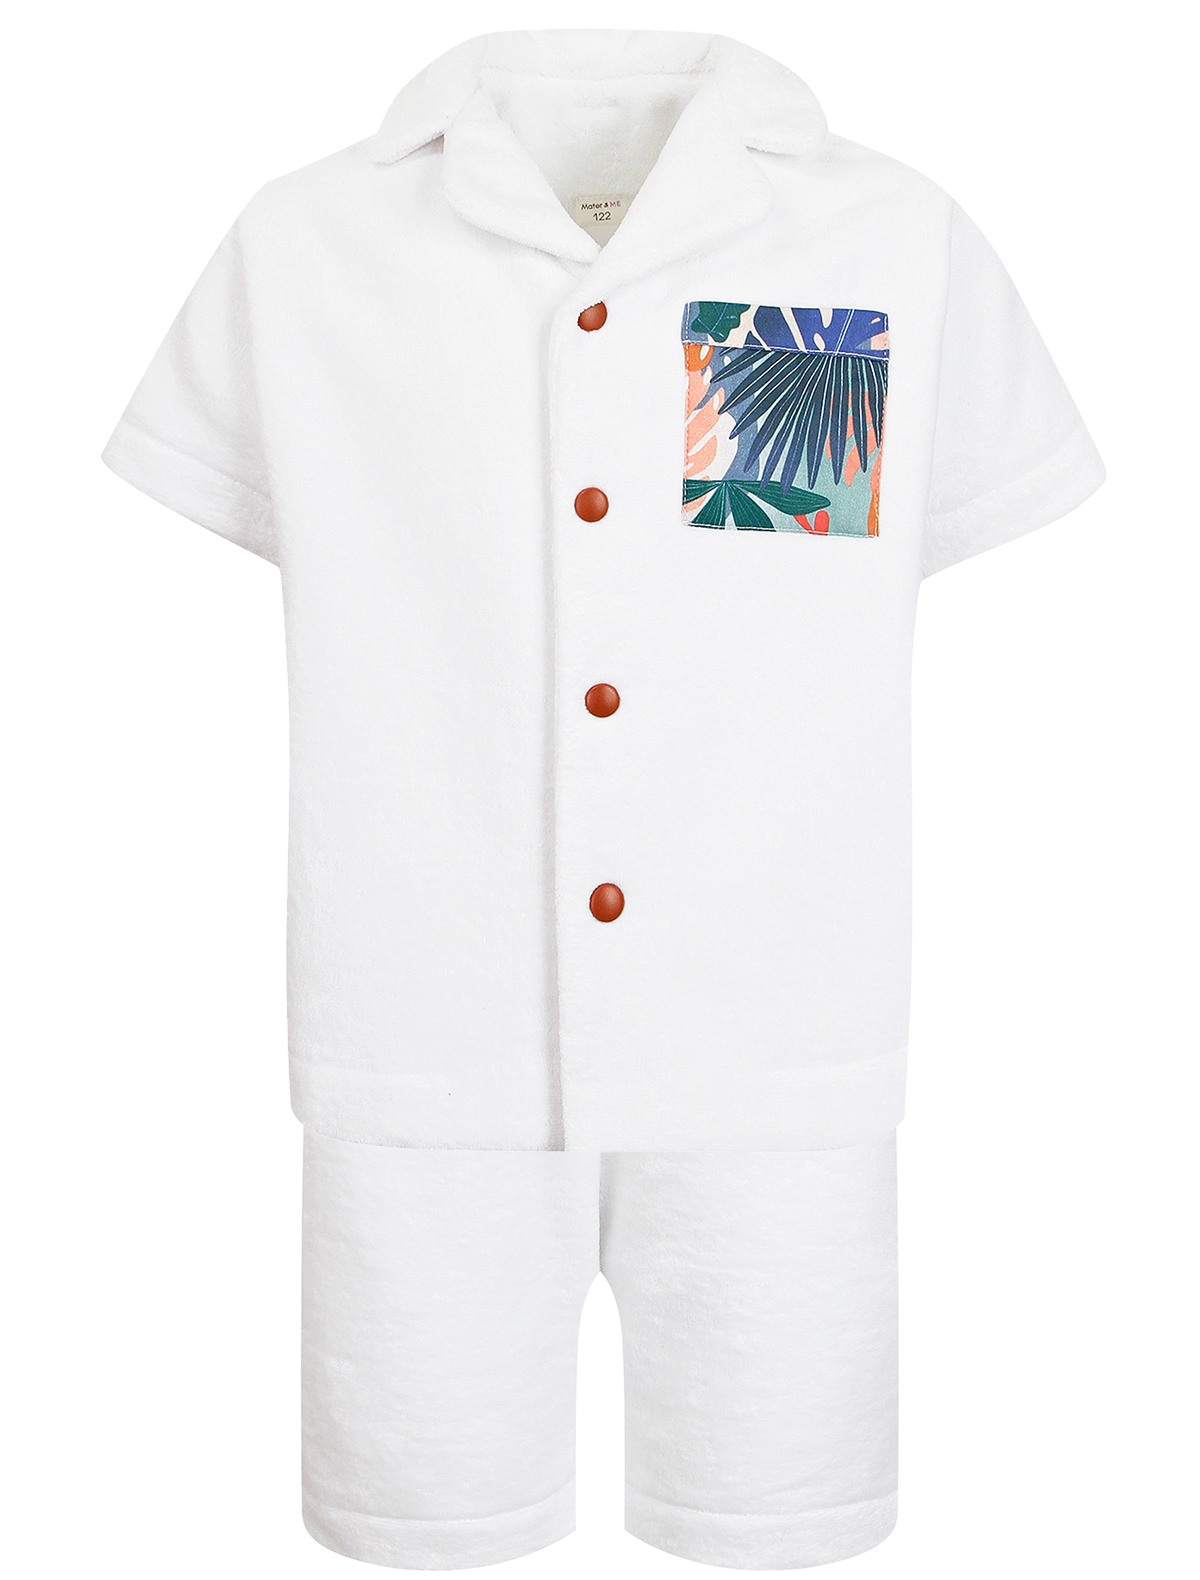 Пижама Mater&ME 2673140, цвет белый, размер 6